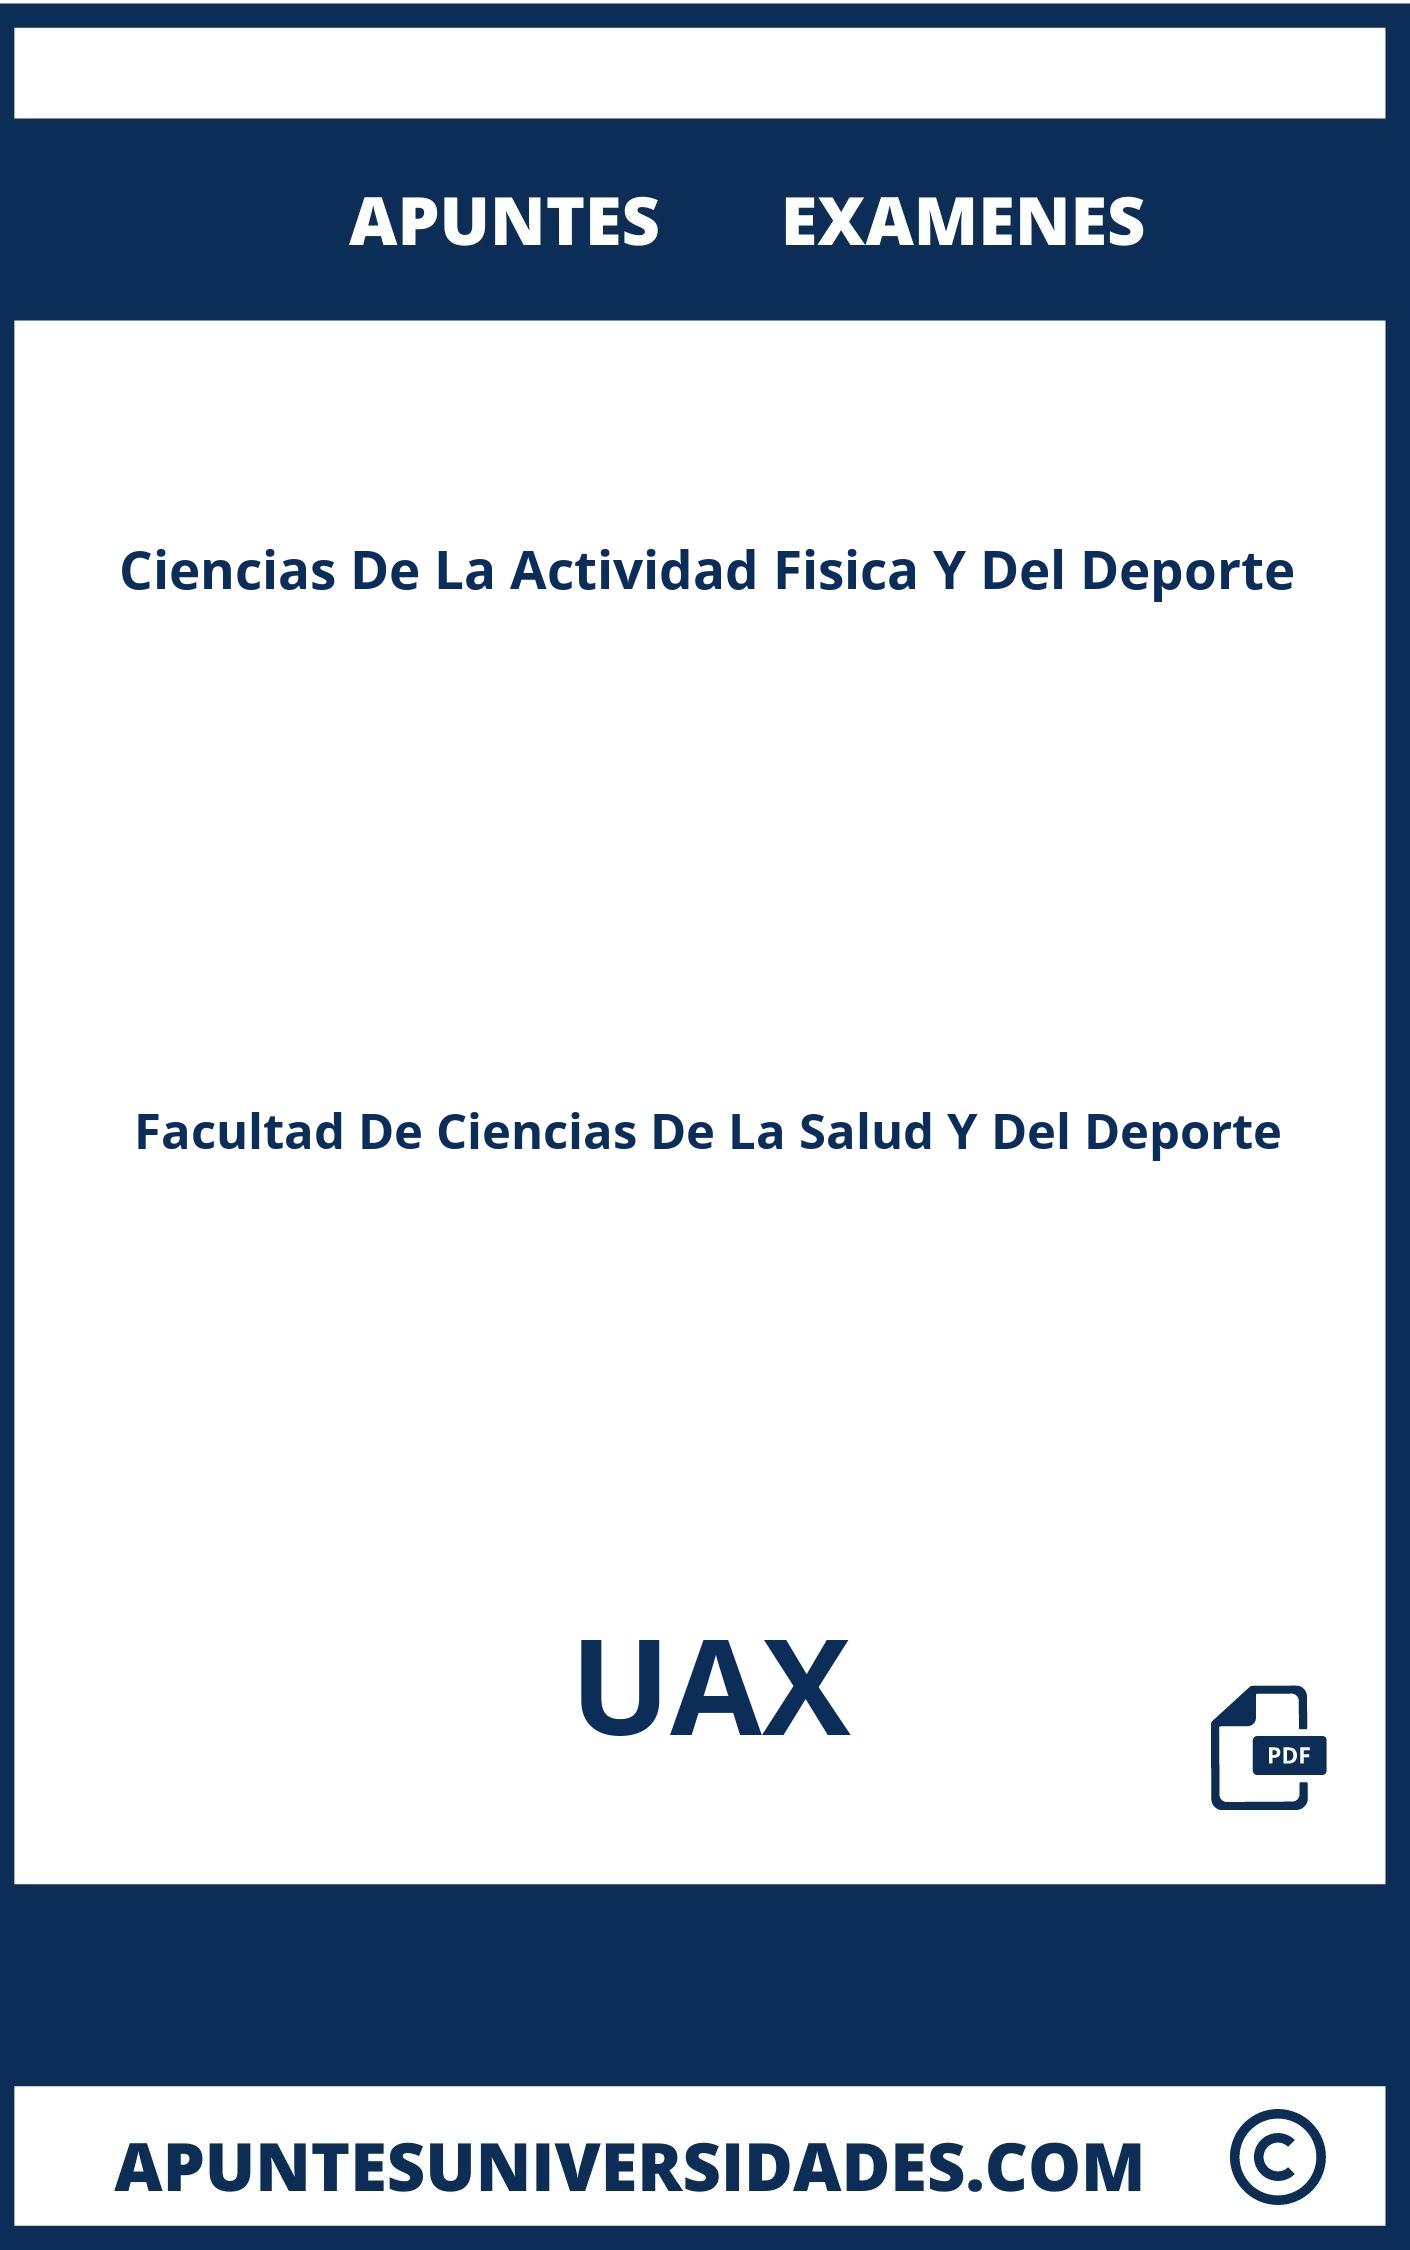 Examenes y Apuntes de Ciencias De La Actividad Fisica Y Del Deporte UAX